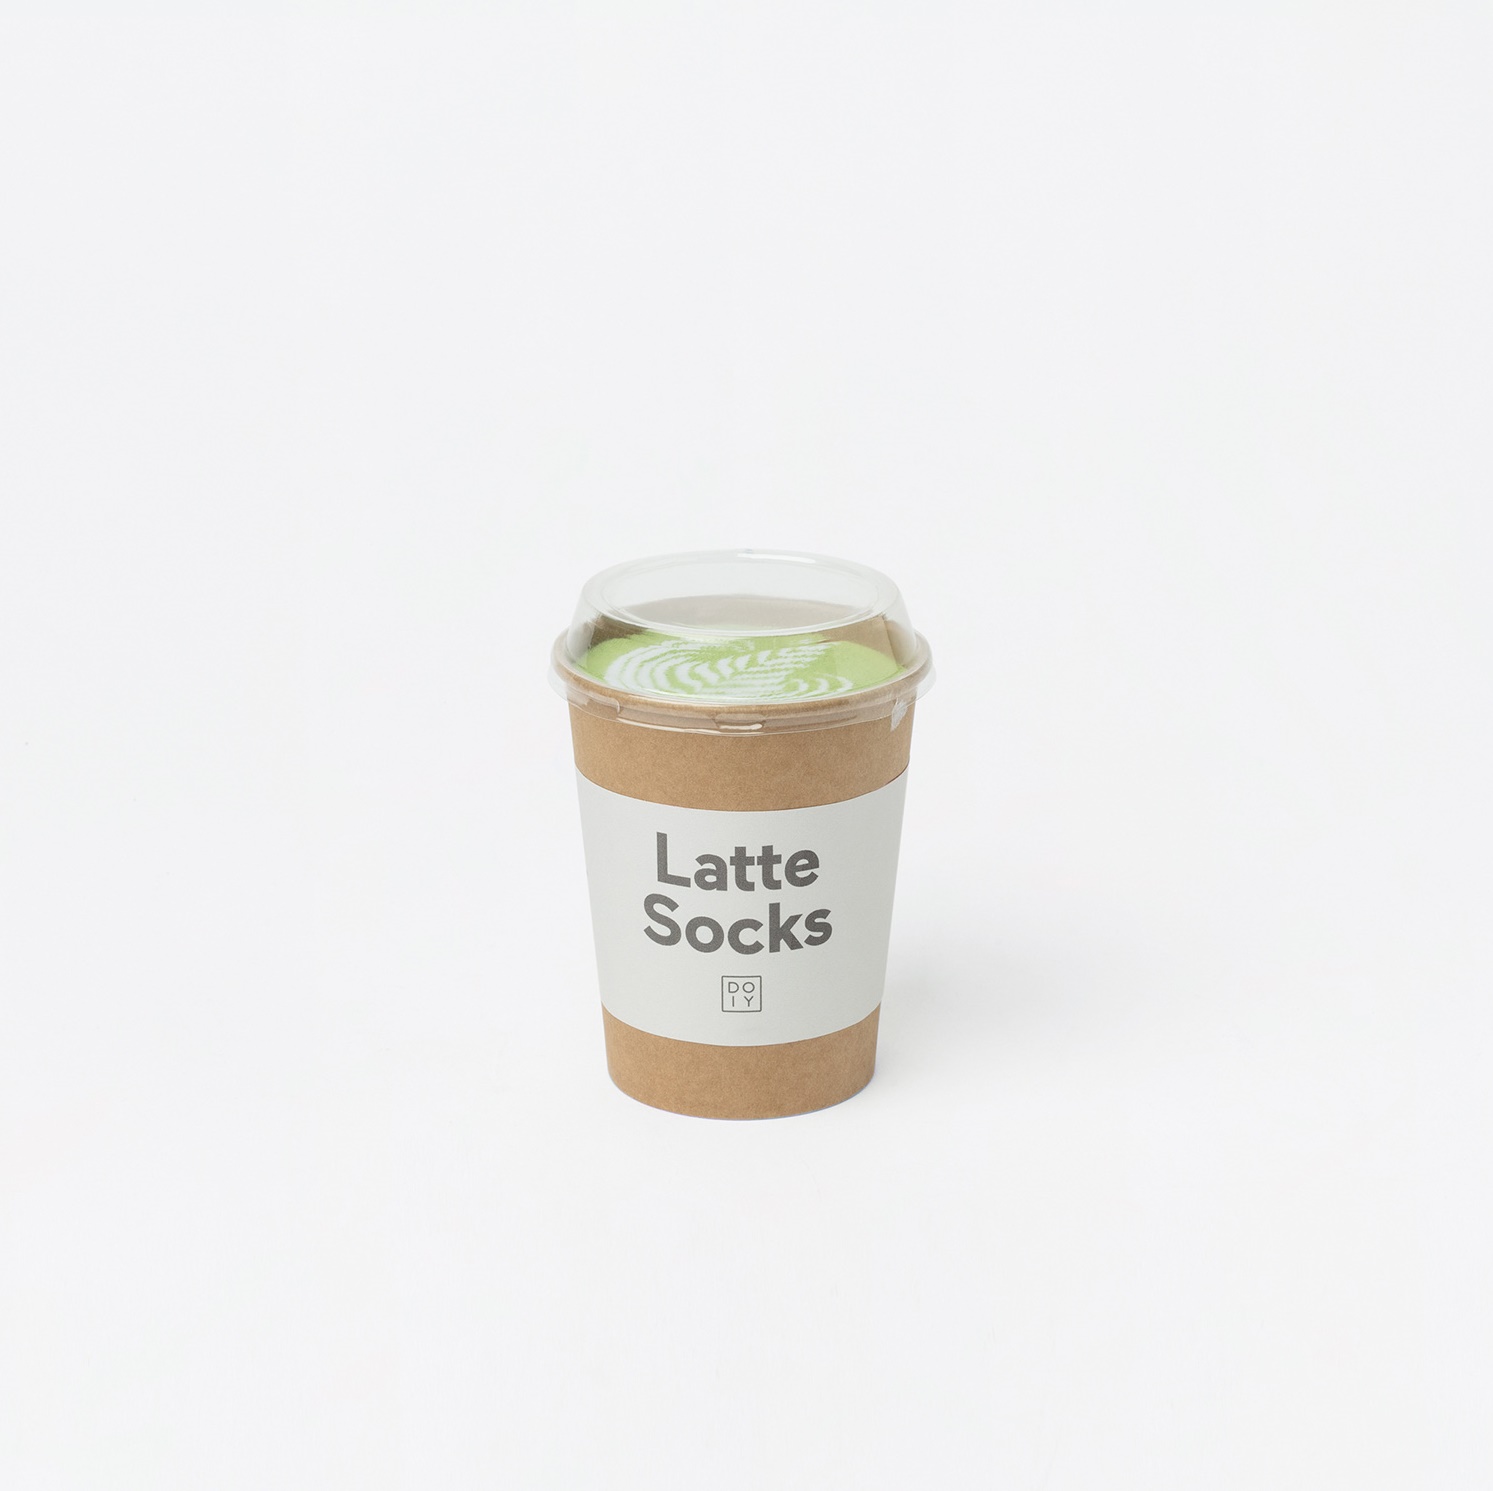 Latte socks matcha